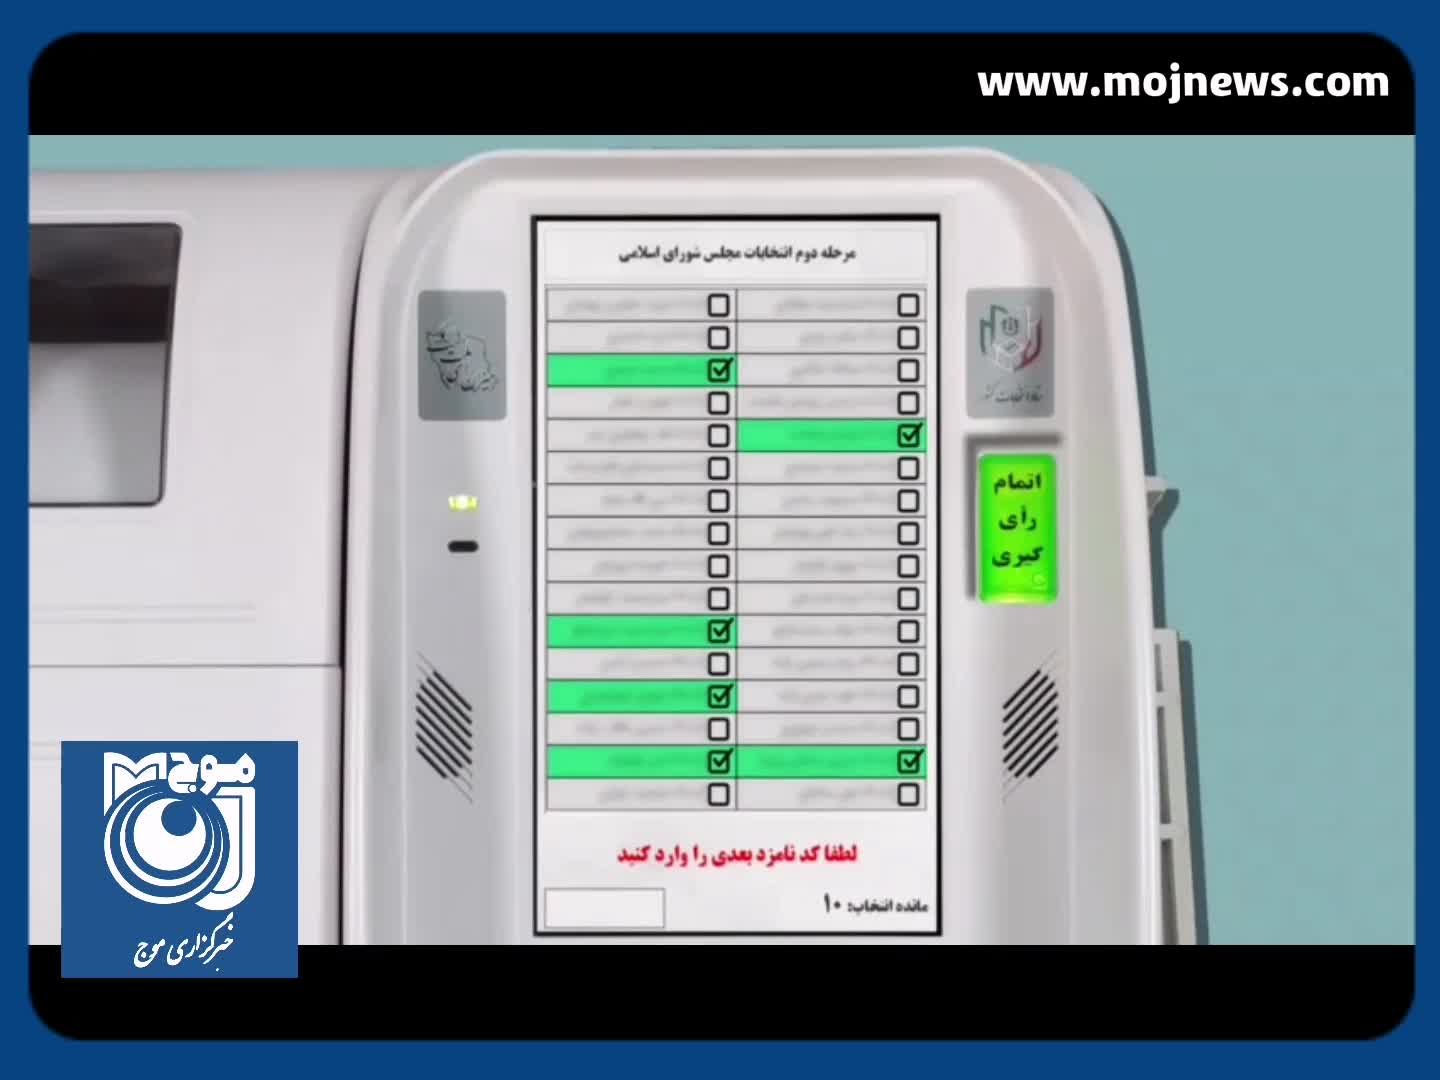 آموزش رای الکترونیک در مرحله دوم انتخابات دوازدهمین دوره مجلس شورای اسلامی + فیلم